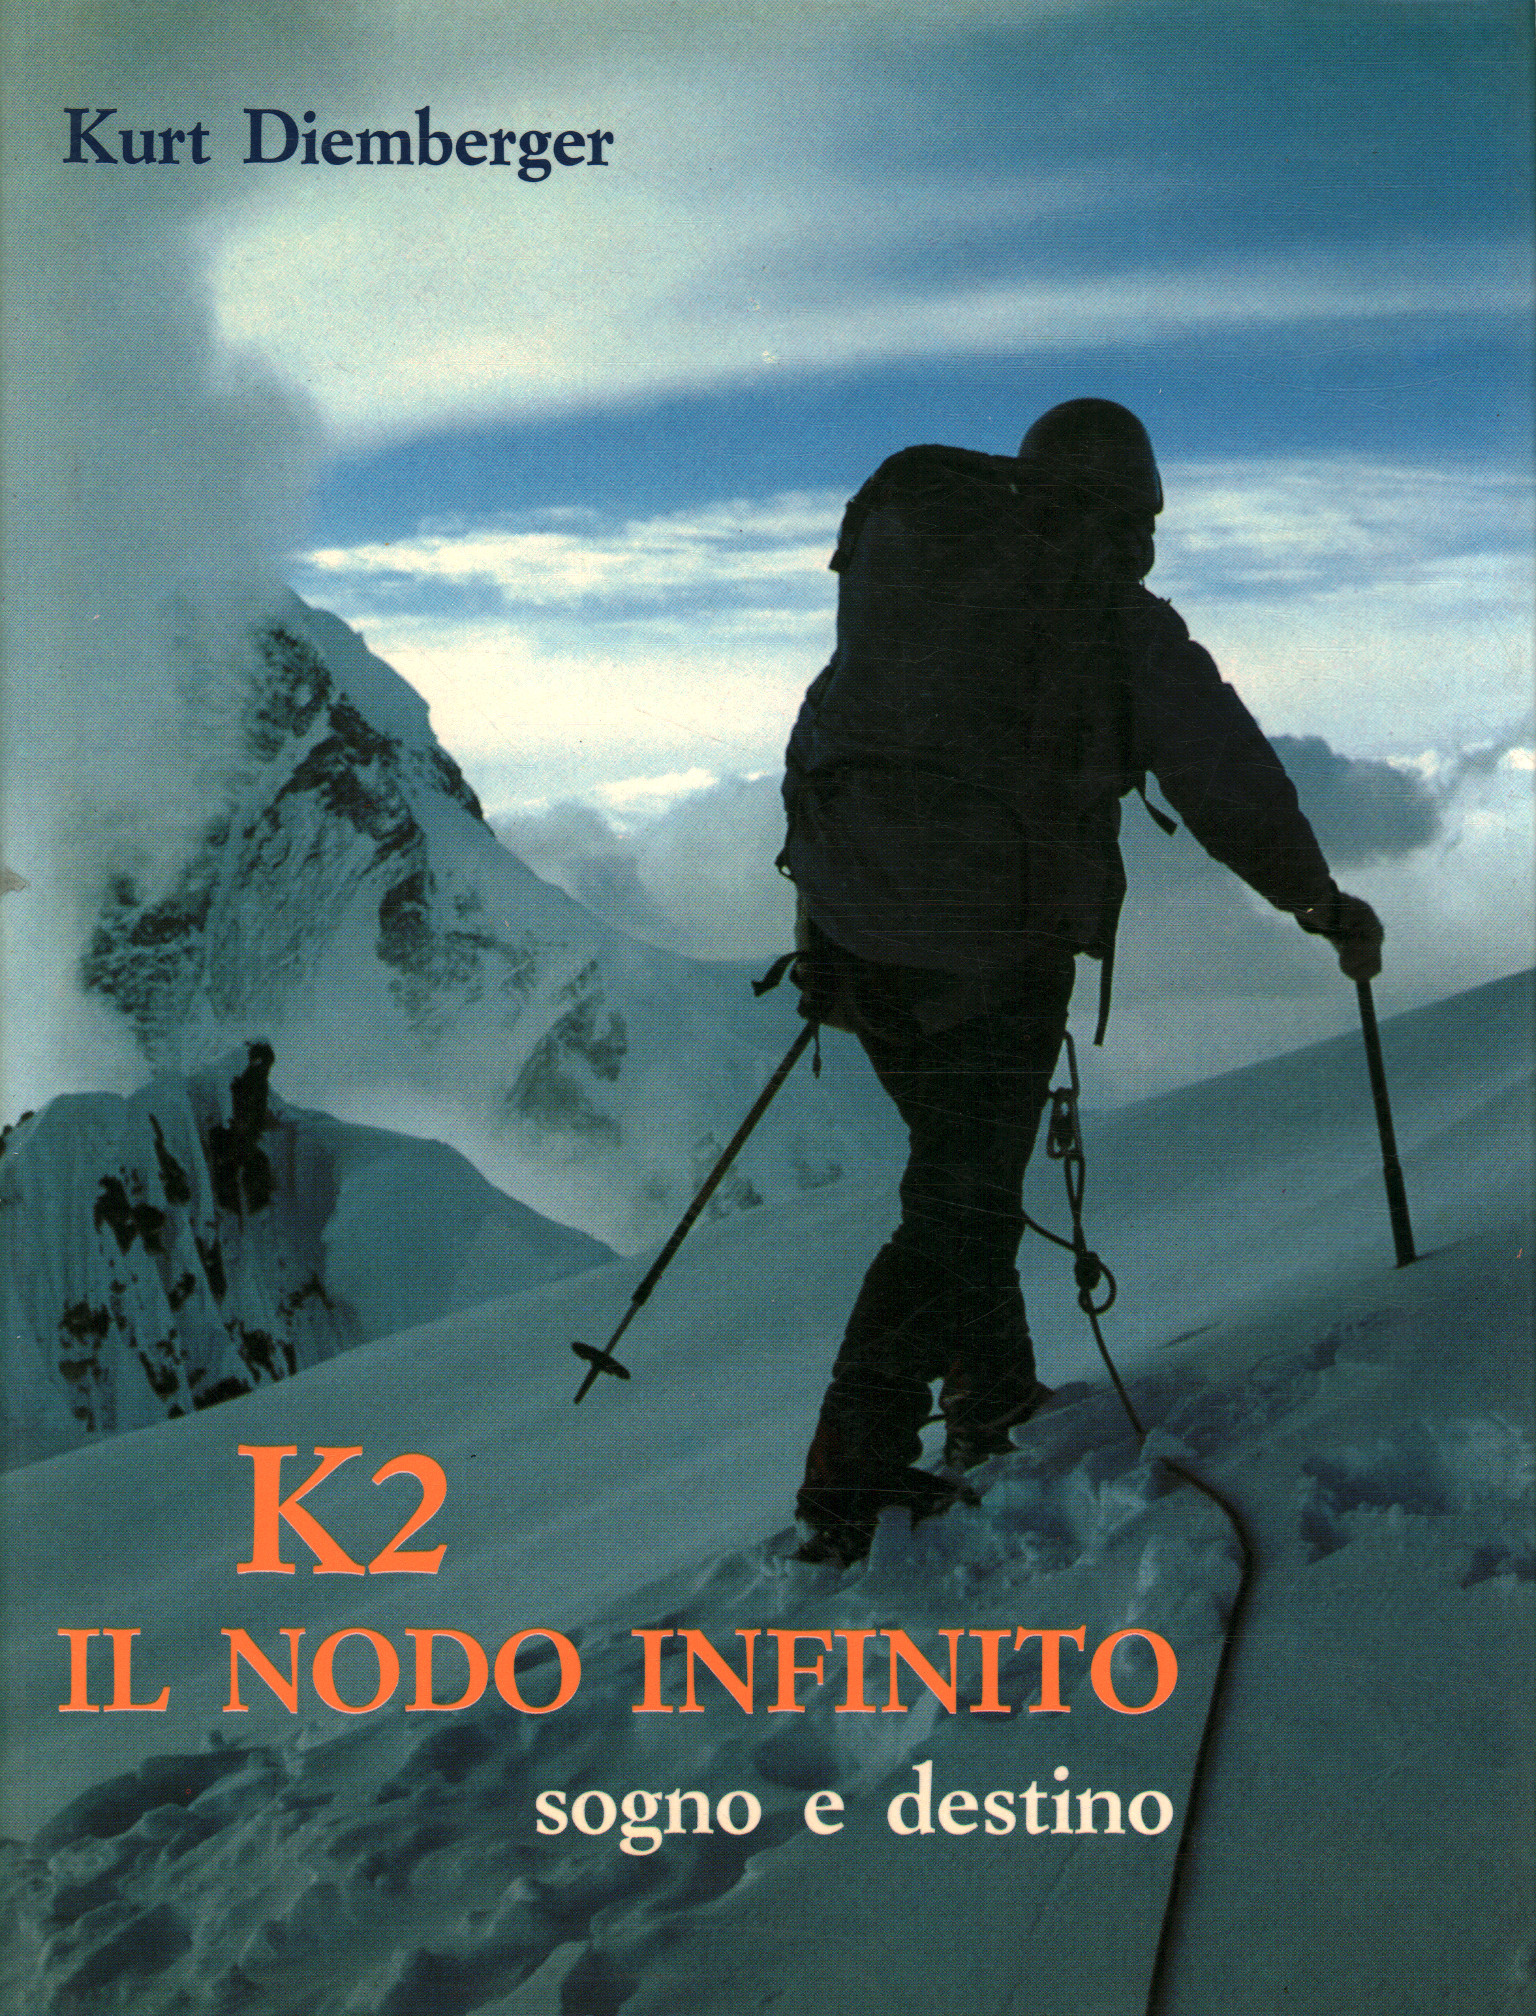 K2 der unendliche Knoten